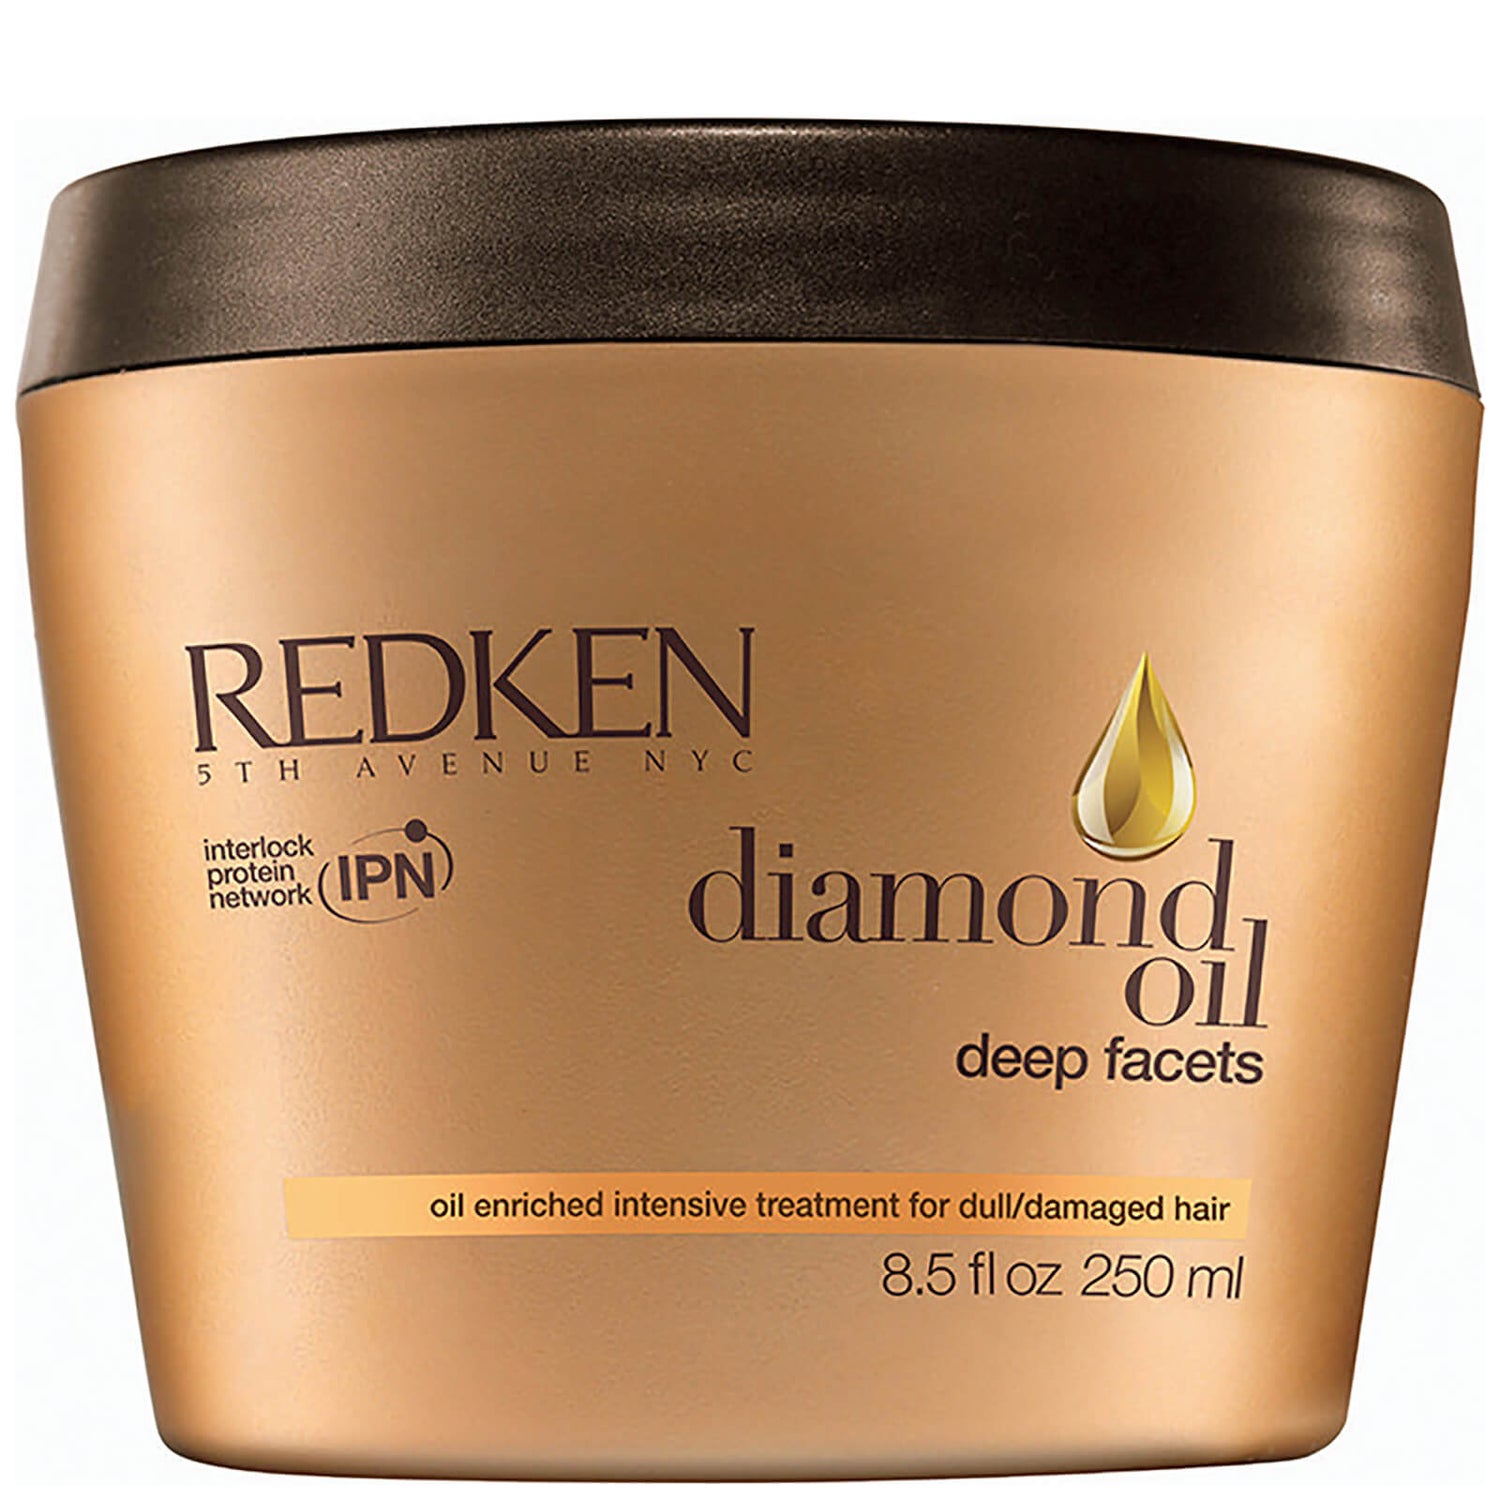 Redken Diamond Oil Deep Facets 8.5oz